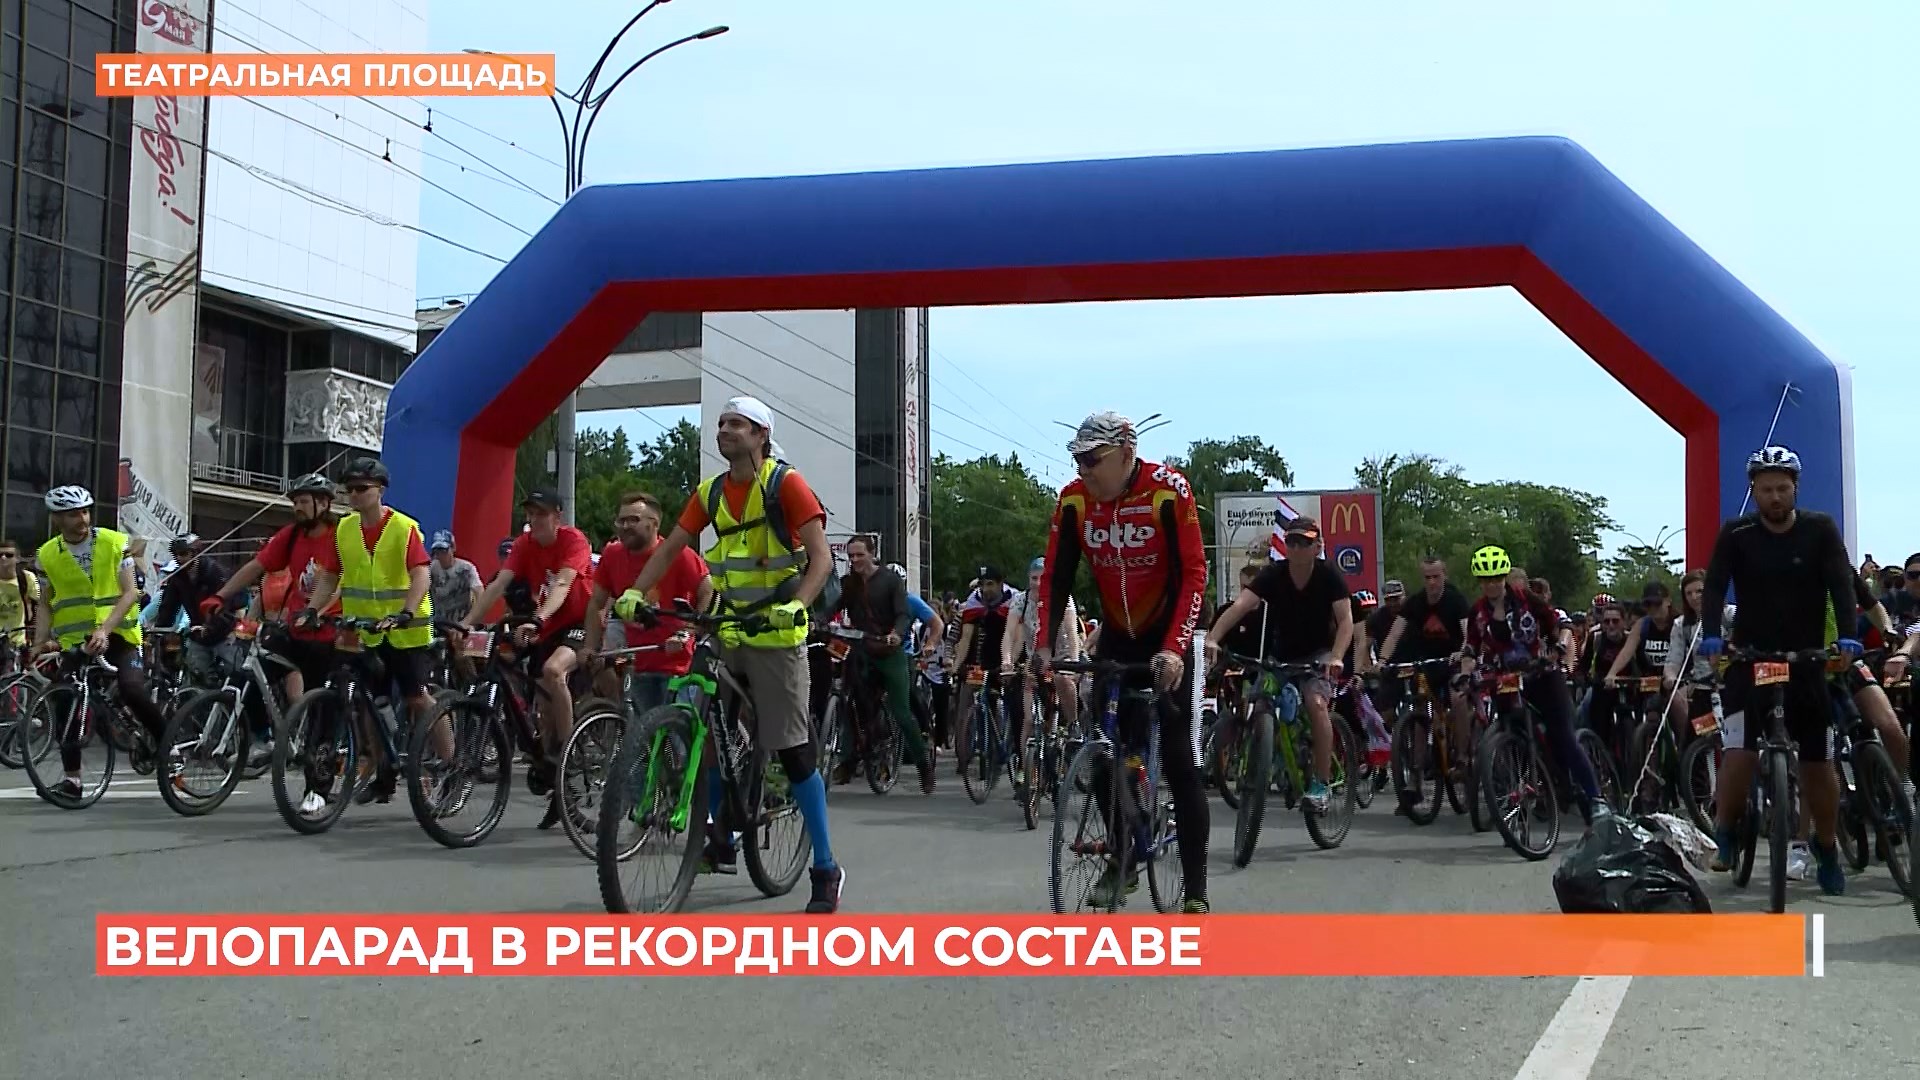 Самый массовый велопарад проехал по улицам Ростова